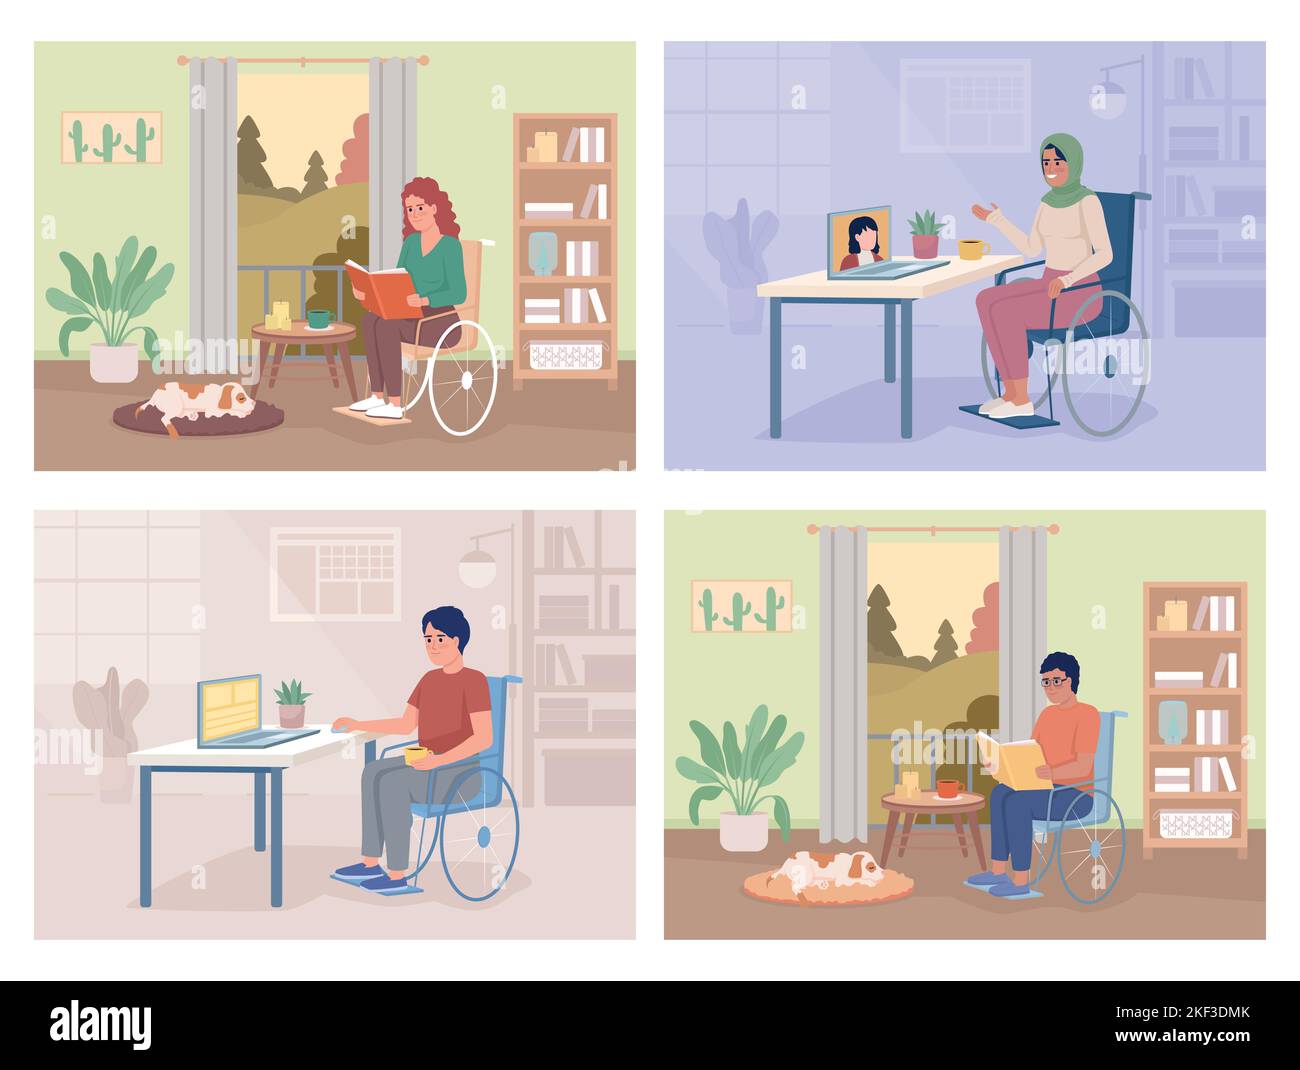 Leben mit Behinderung flache Farbe Vektor Illustrationen Set Stock Vektor